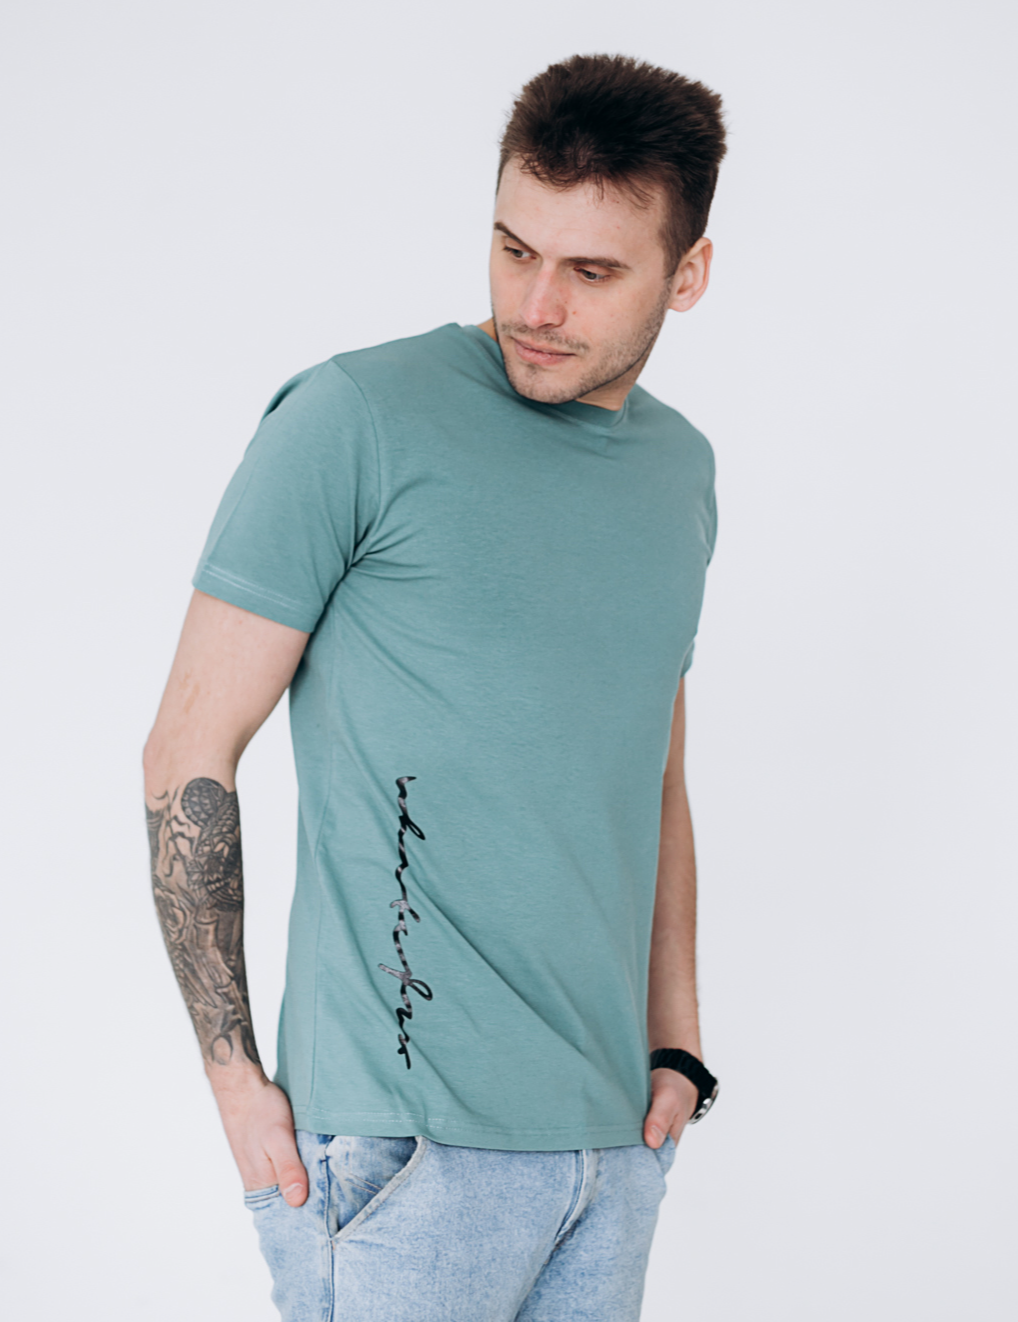 Мужская футболка с вертикальным принтом 40109